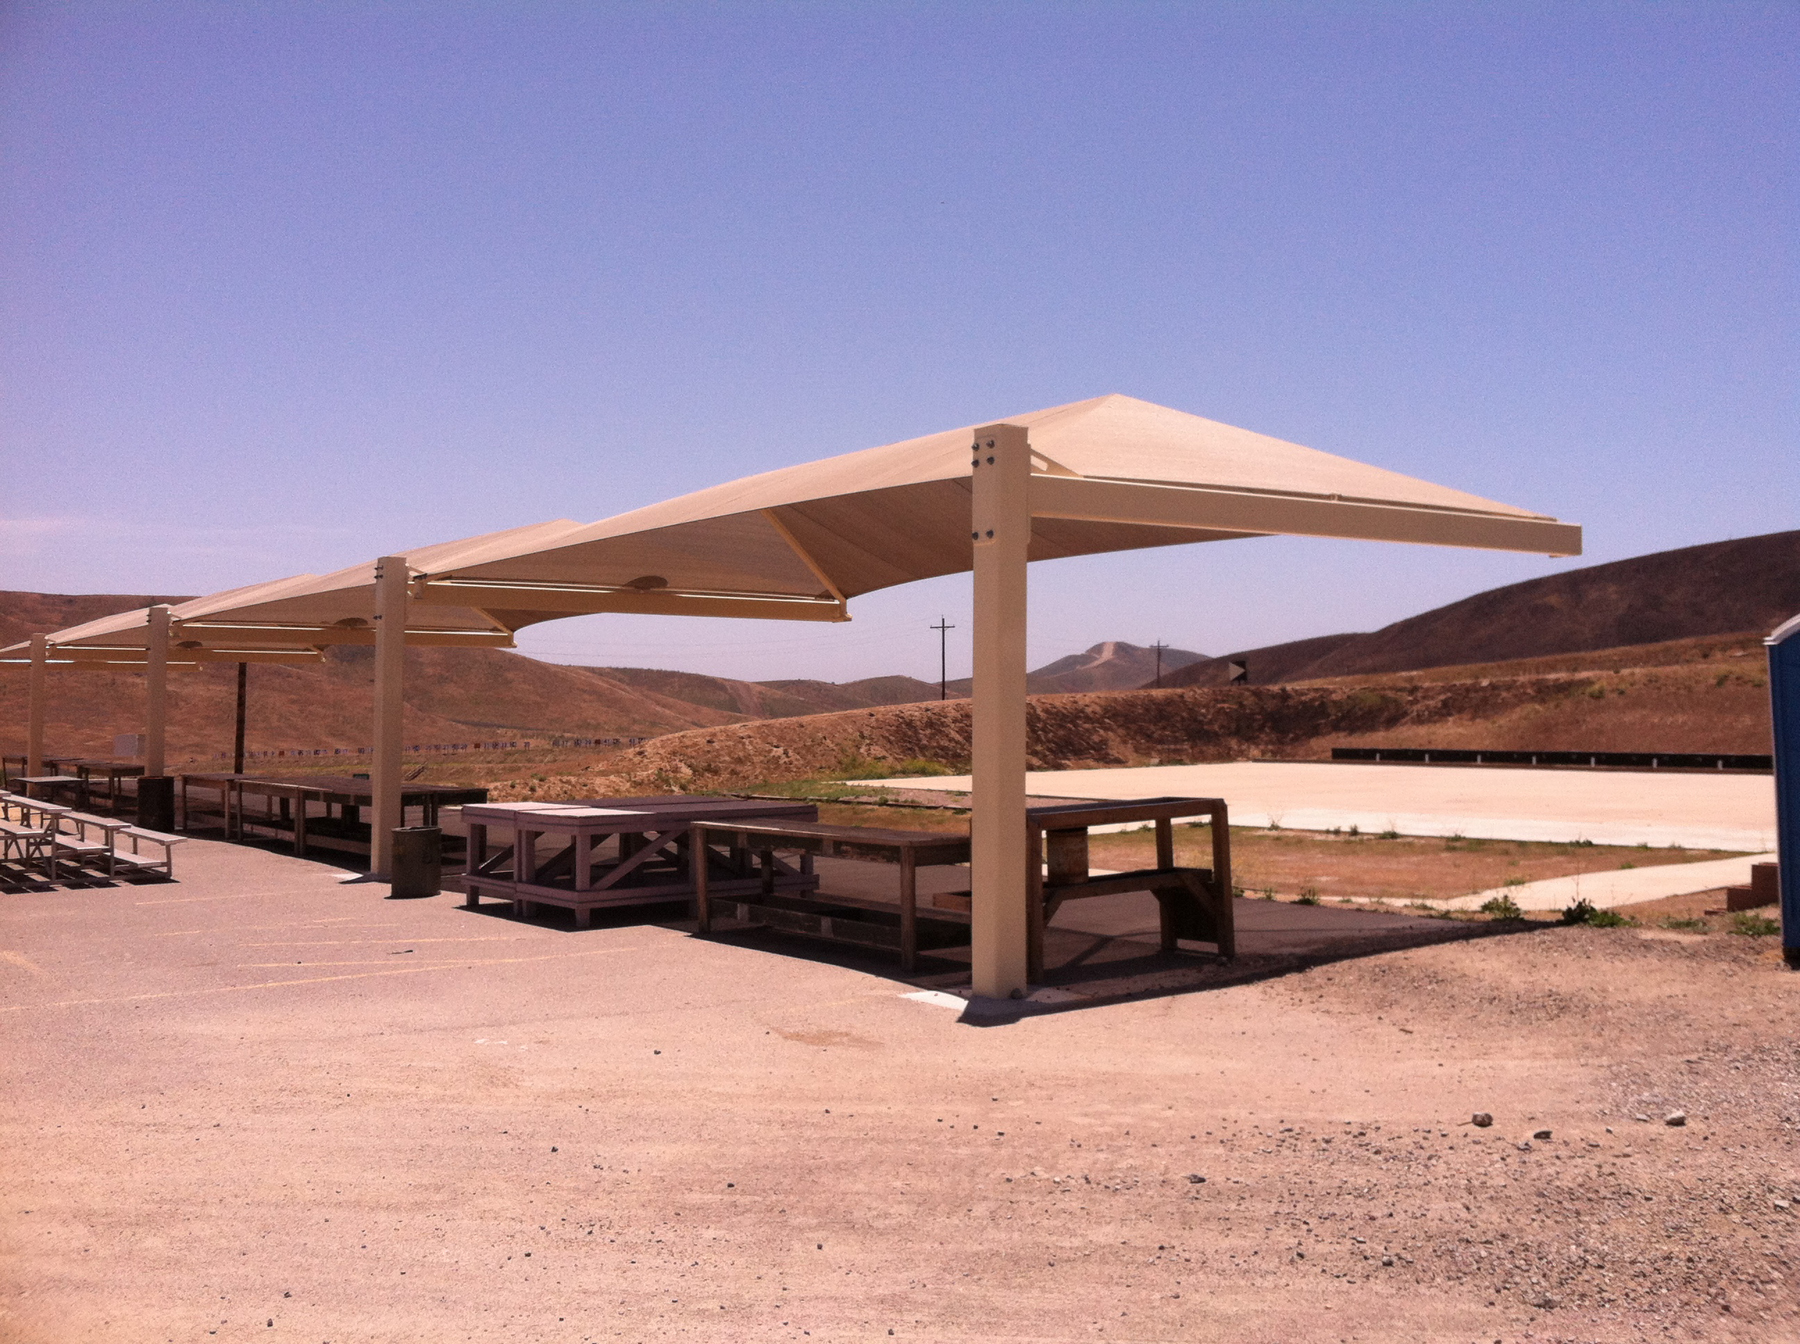 tan sun shades covering shoot range stations